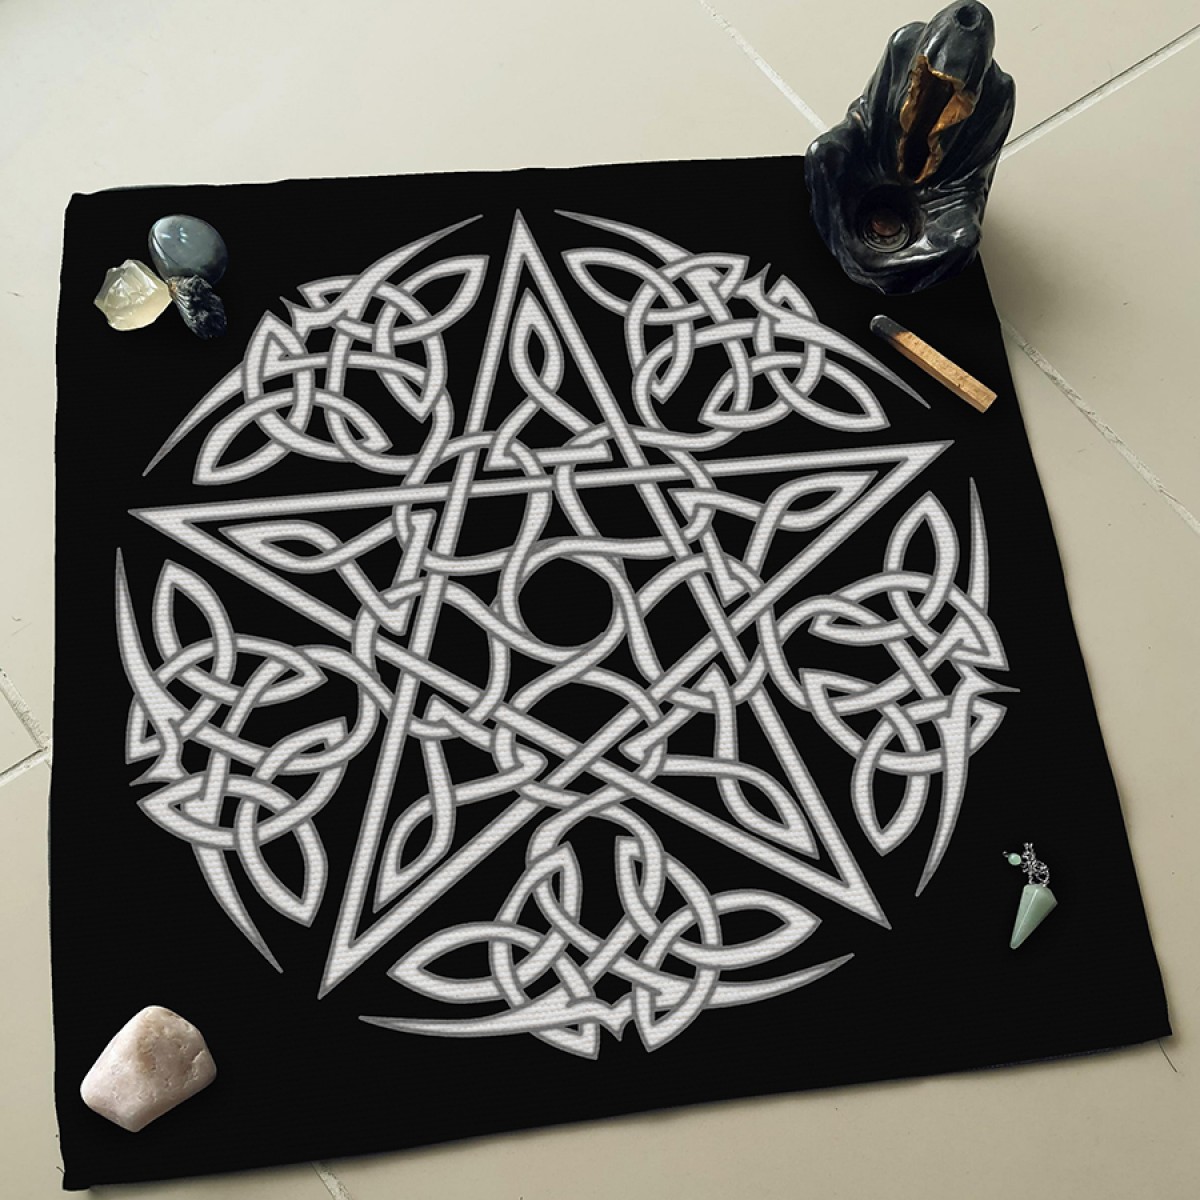 Pentagram Witchcraft  Altar - Sunak - Tarot Açılım  Örtüsü